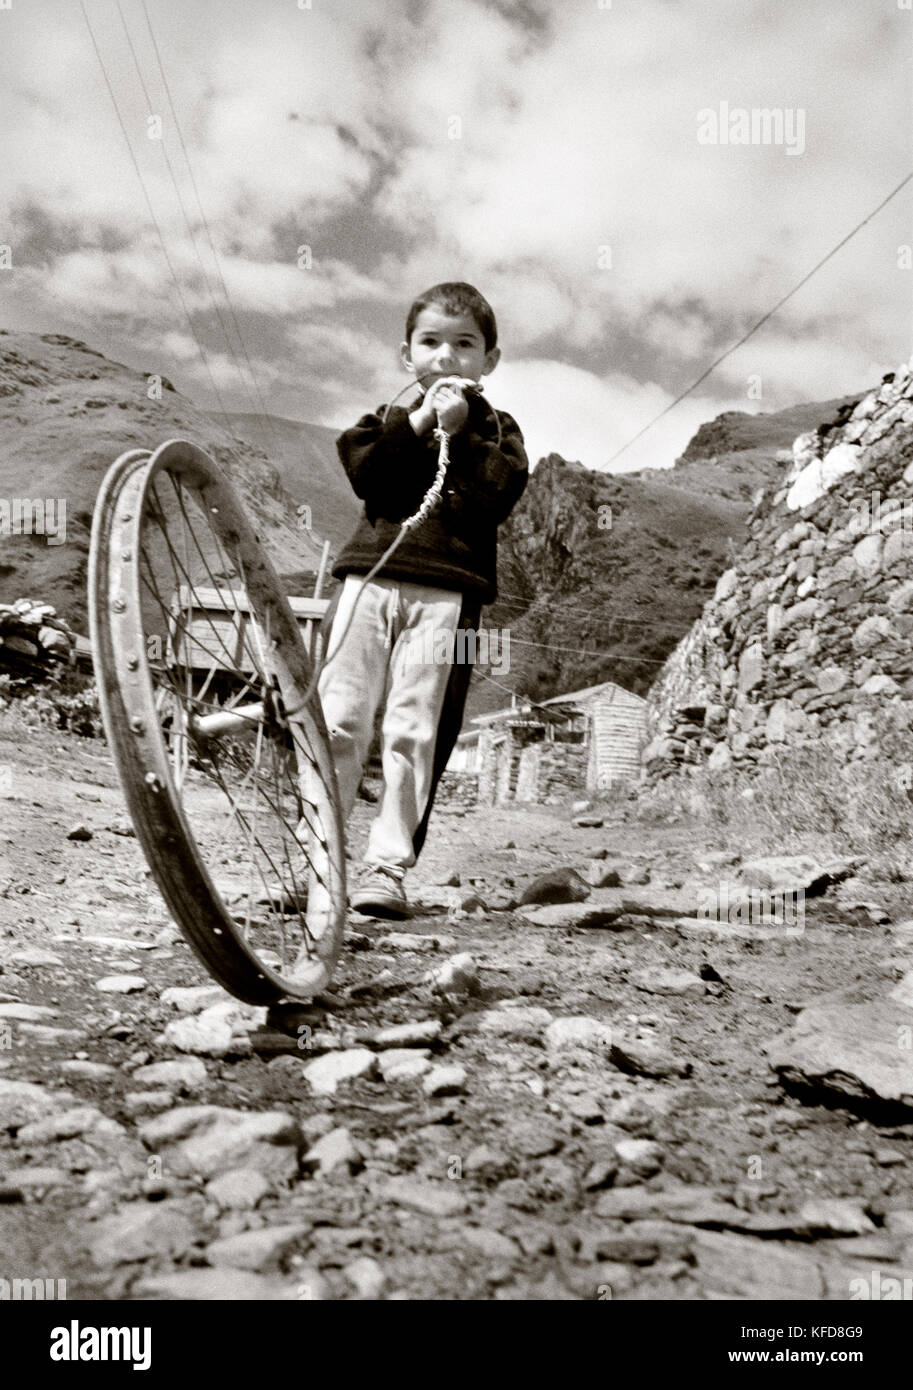 Republik Georgien, Junge spielt mit einem Spielzeug aus einem alten Fahrrad Felge (b&w) Stockfoto